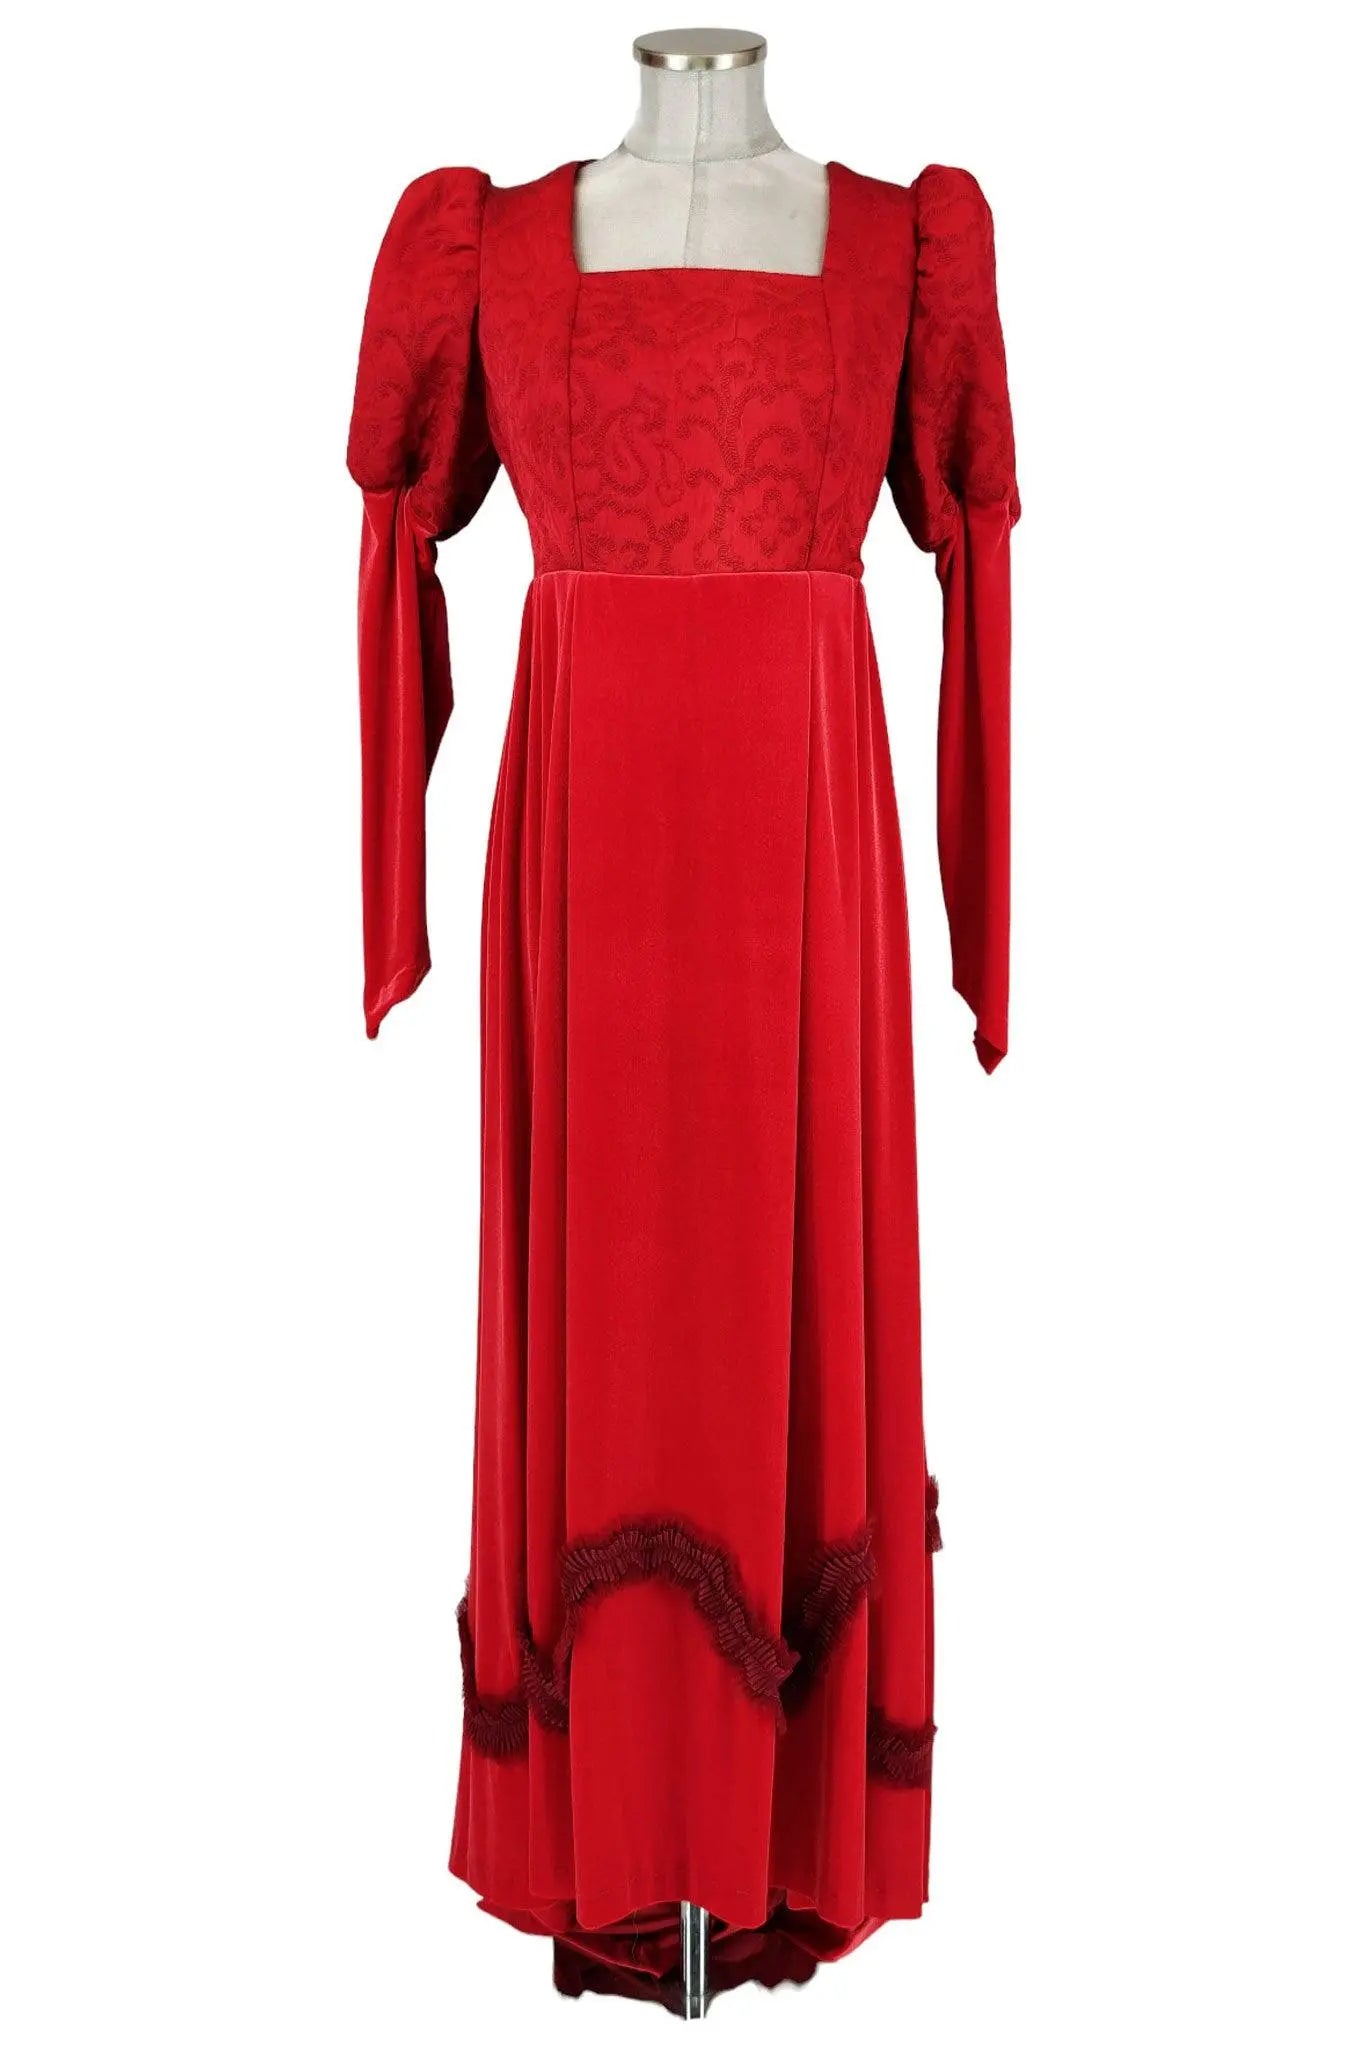 Noleggio abito rosso medievale donna - storico